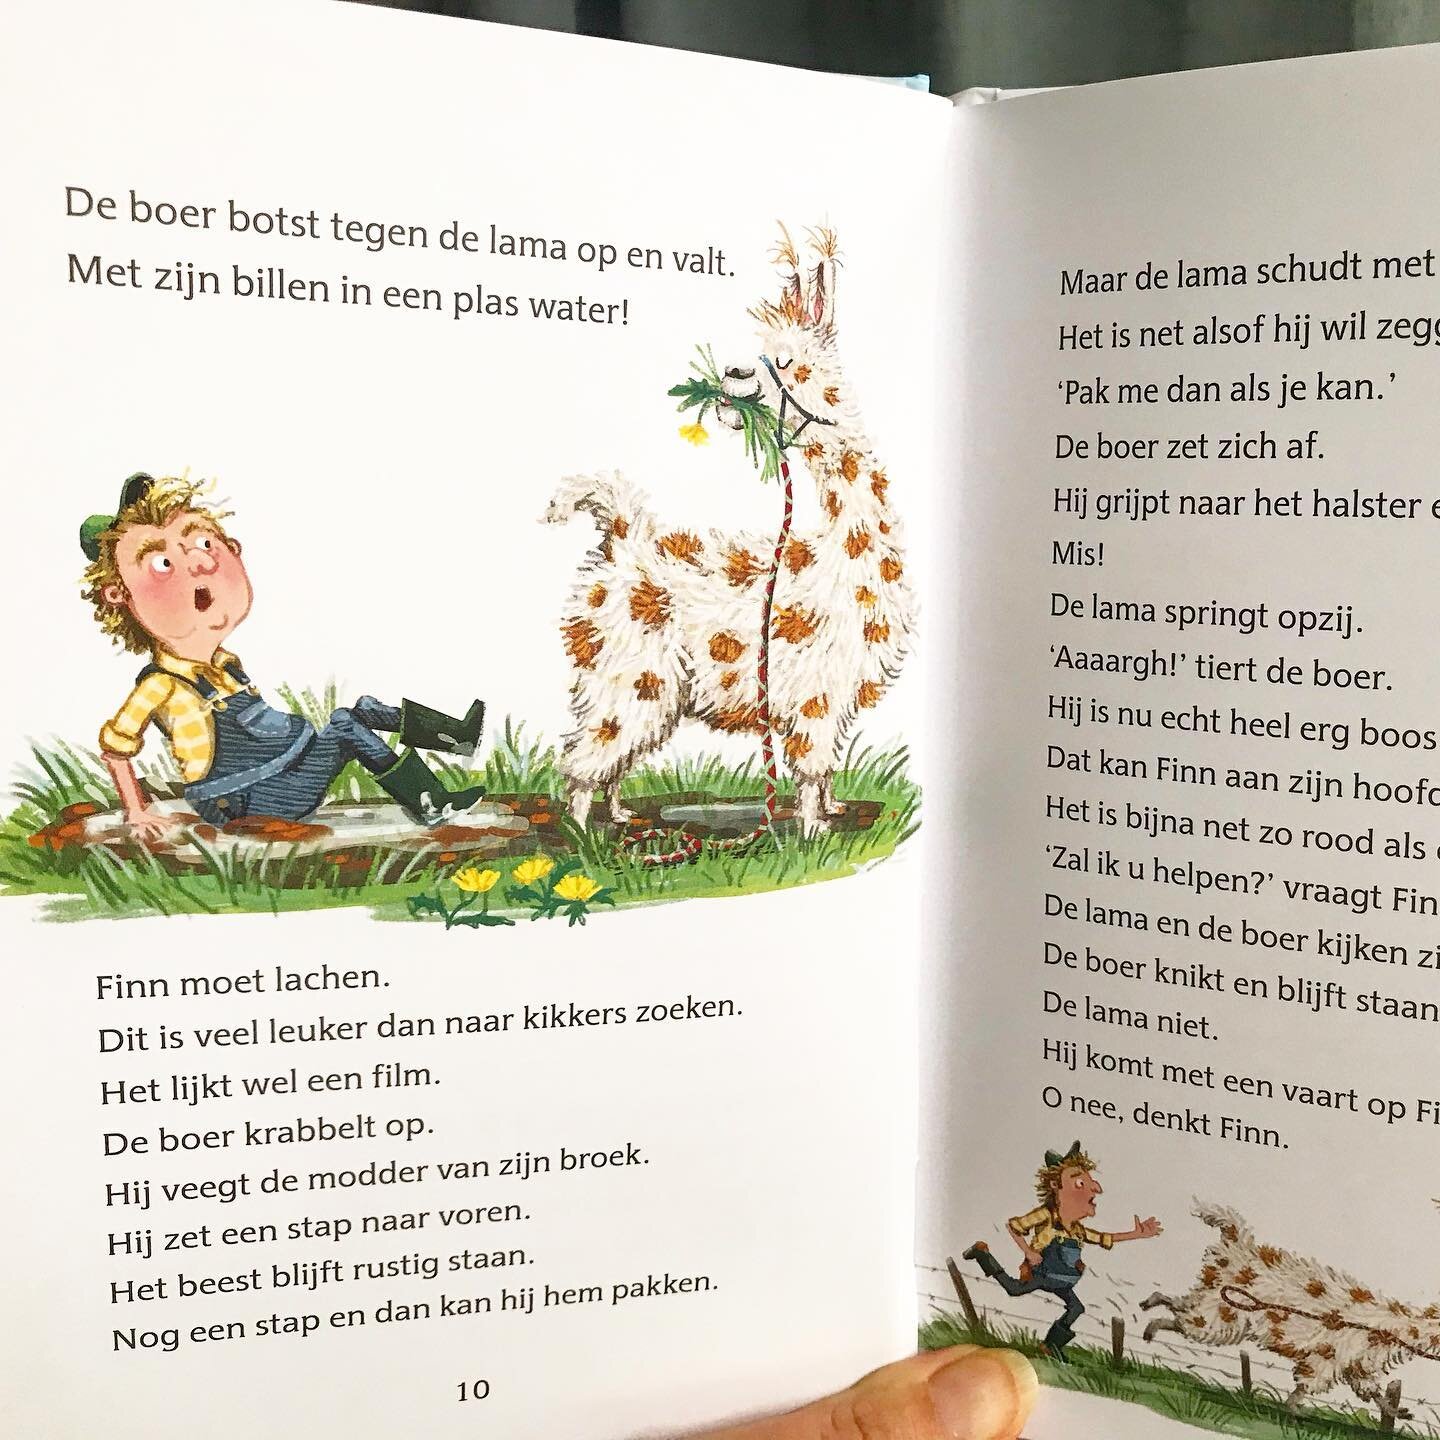 Look out for Spit the llama! Quite friendly, but big, cheeky and clumsy too. 
Available in the Dutch bookstores. 🎉

In Dutch: Voor kinderen om zelf te lezen. Spit de lama staat in de wei bij een boer. Maar het botert niet zo tussen boer en Spit. Fin